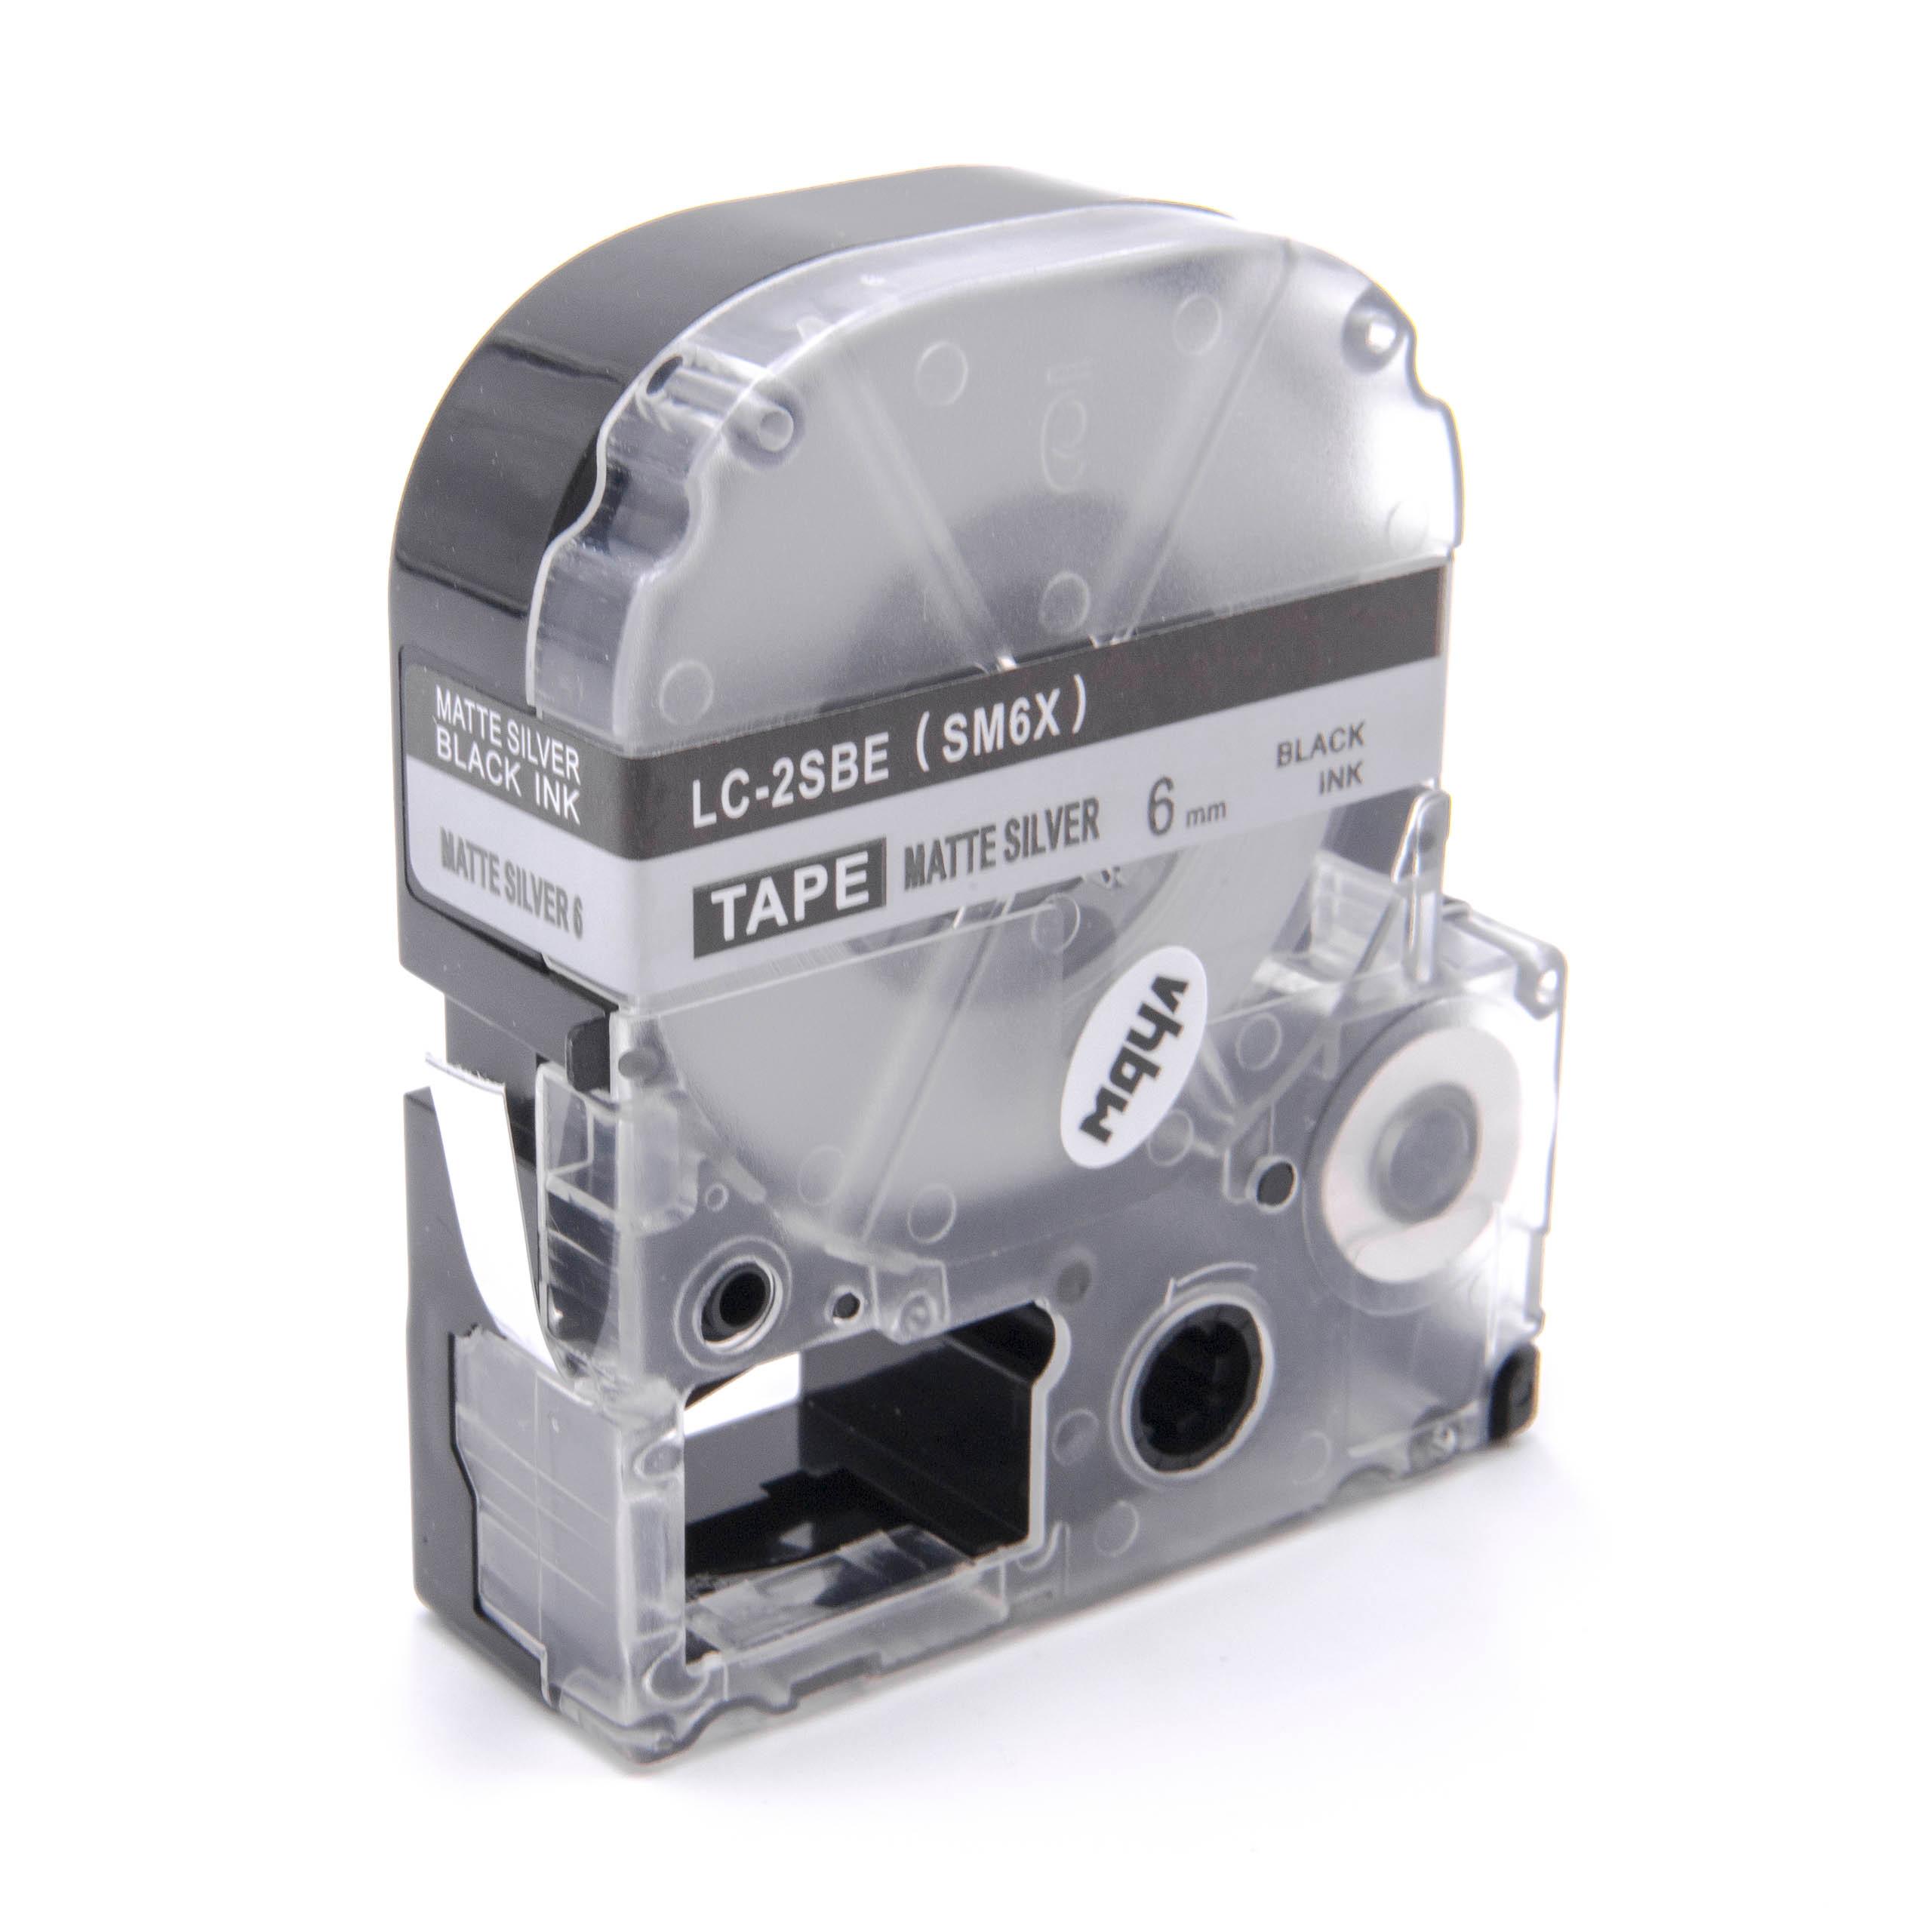 Cassette à ruban remplace Epson LC-2SBE - 6mm lettrage Noir ruban Argent